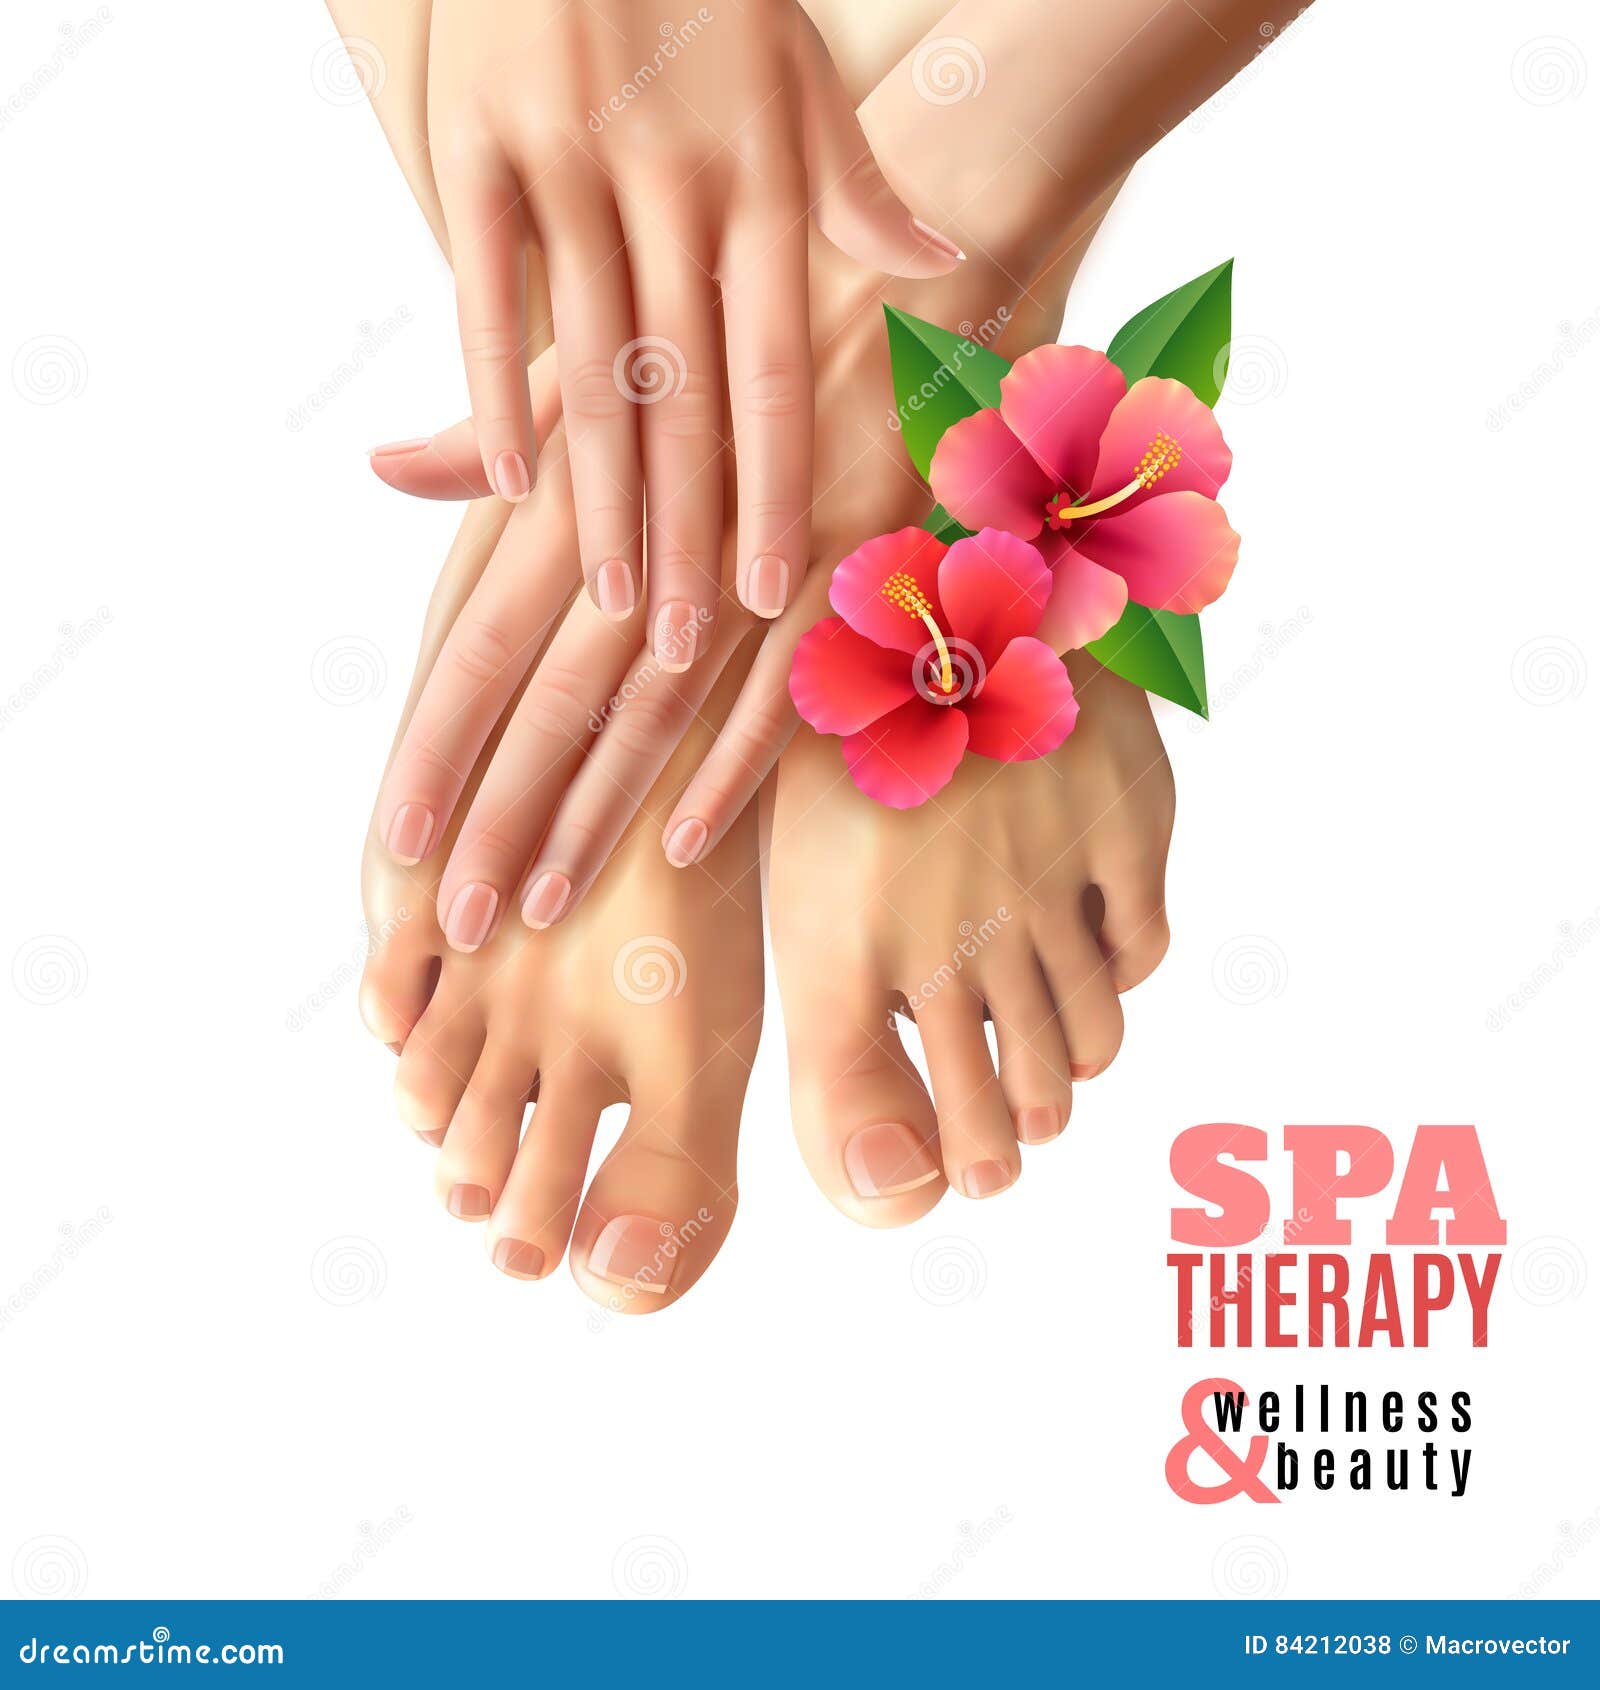 pedicure manicure spa salon poster